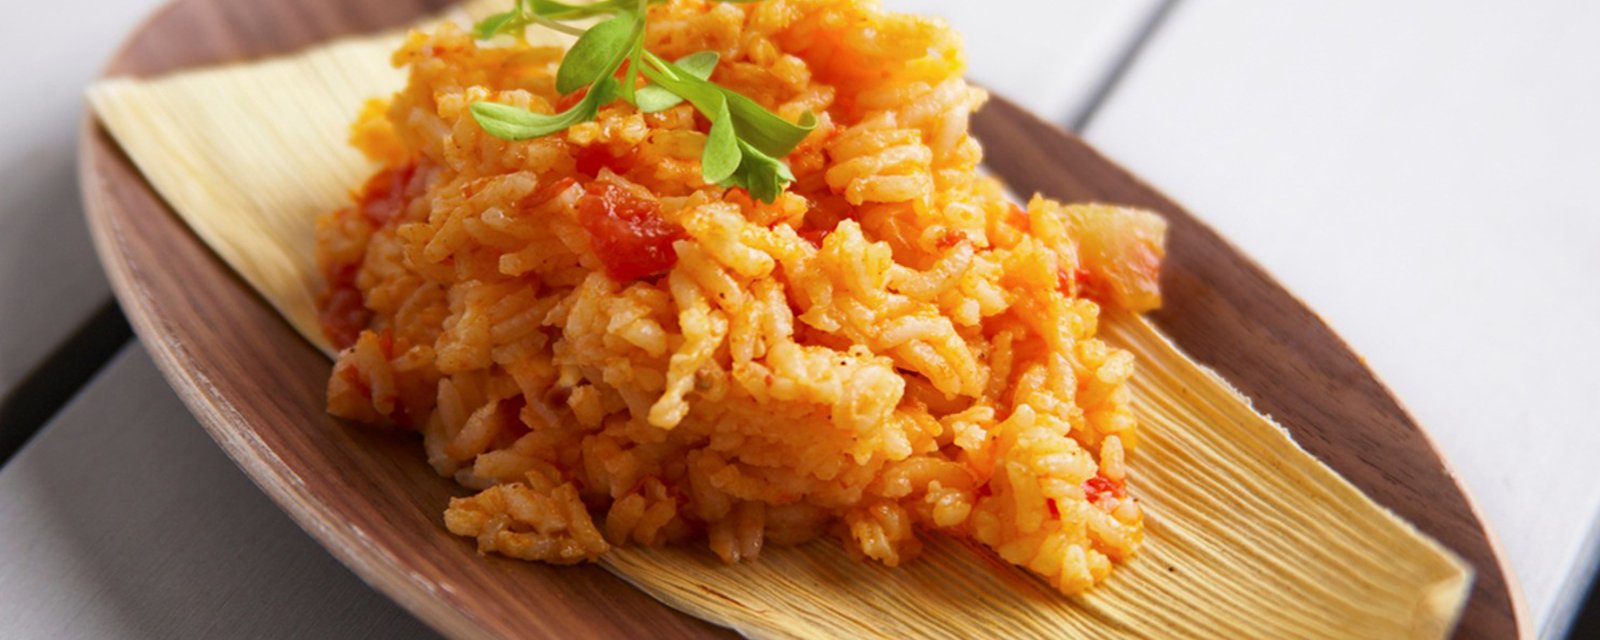 Avec une petite canne de jus de tomate, réalisez le meilleur riz mexicain que vous aurez mangé!